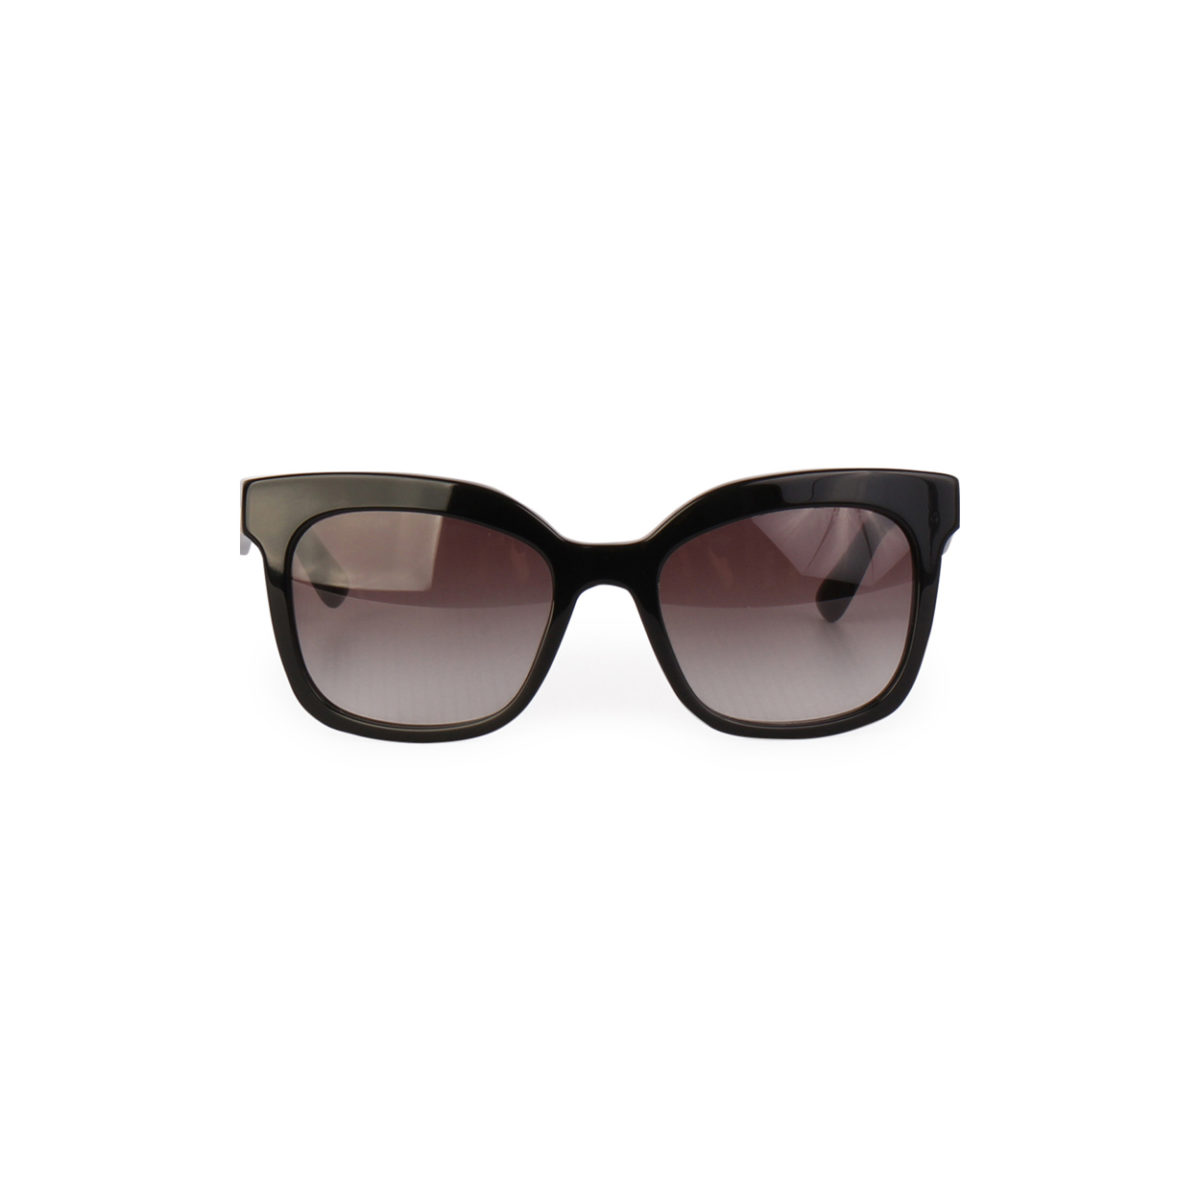 prada cat eye sunglasses black and white